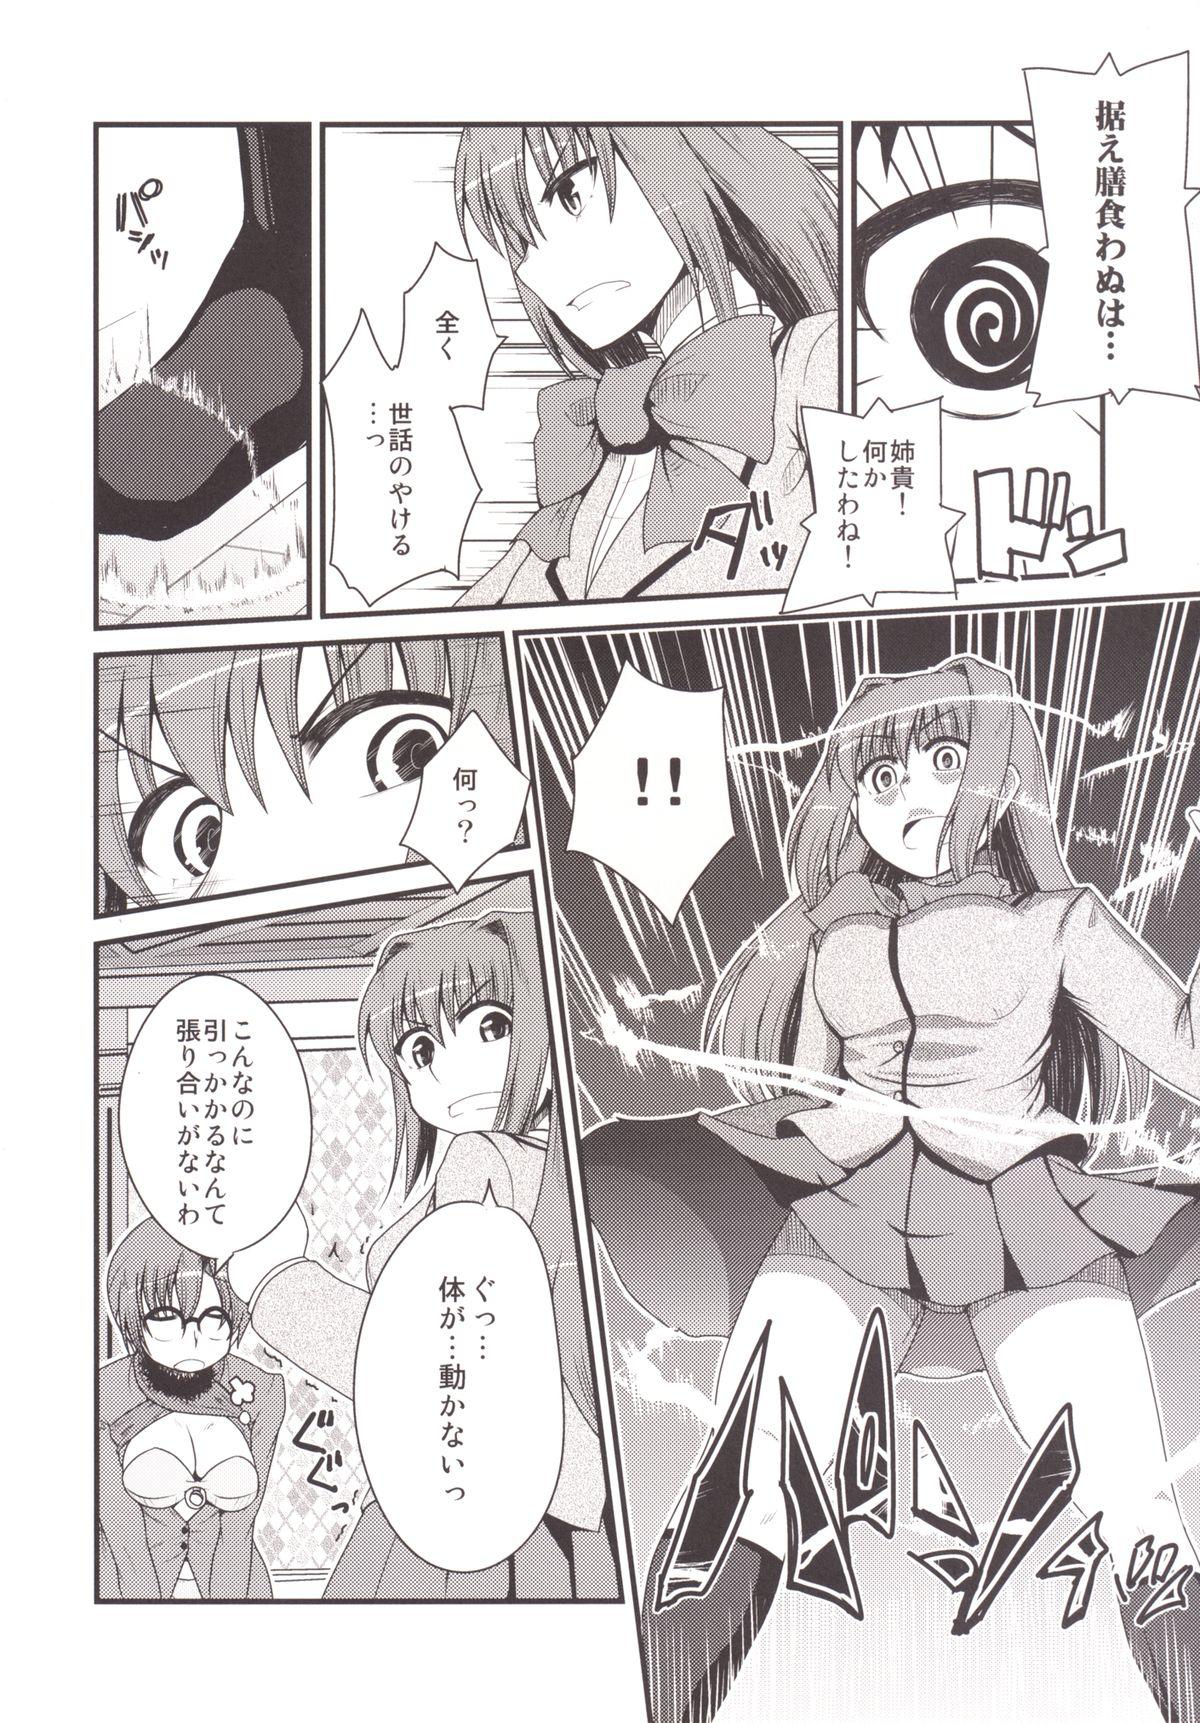 Women Ittsu Main 2 - Mahou tsukai no yoru Stepsis - Page 8